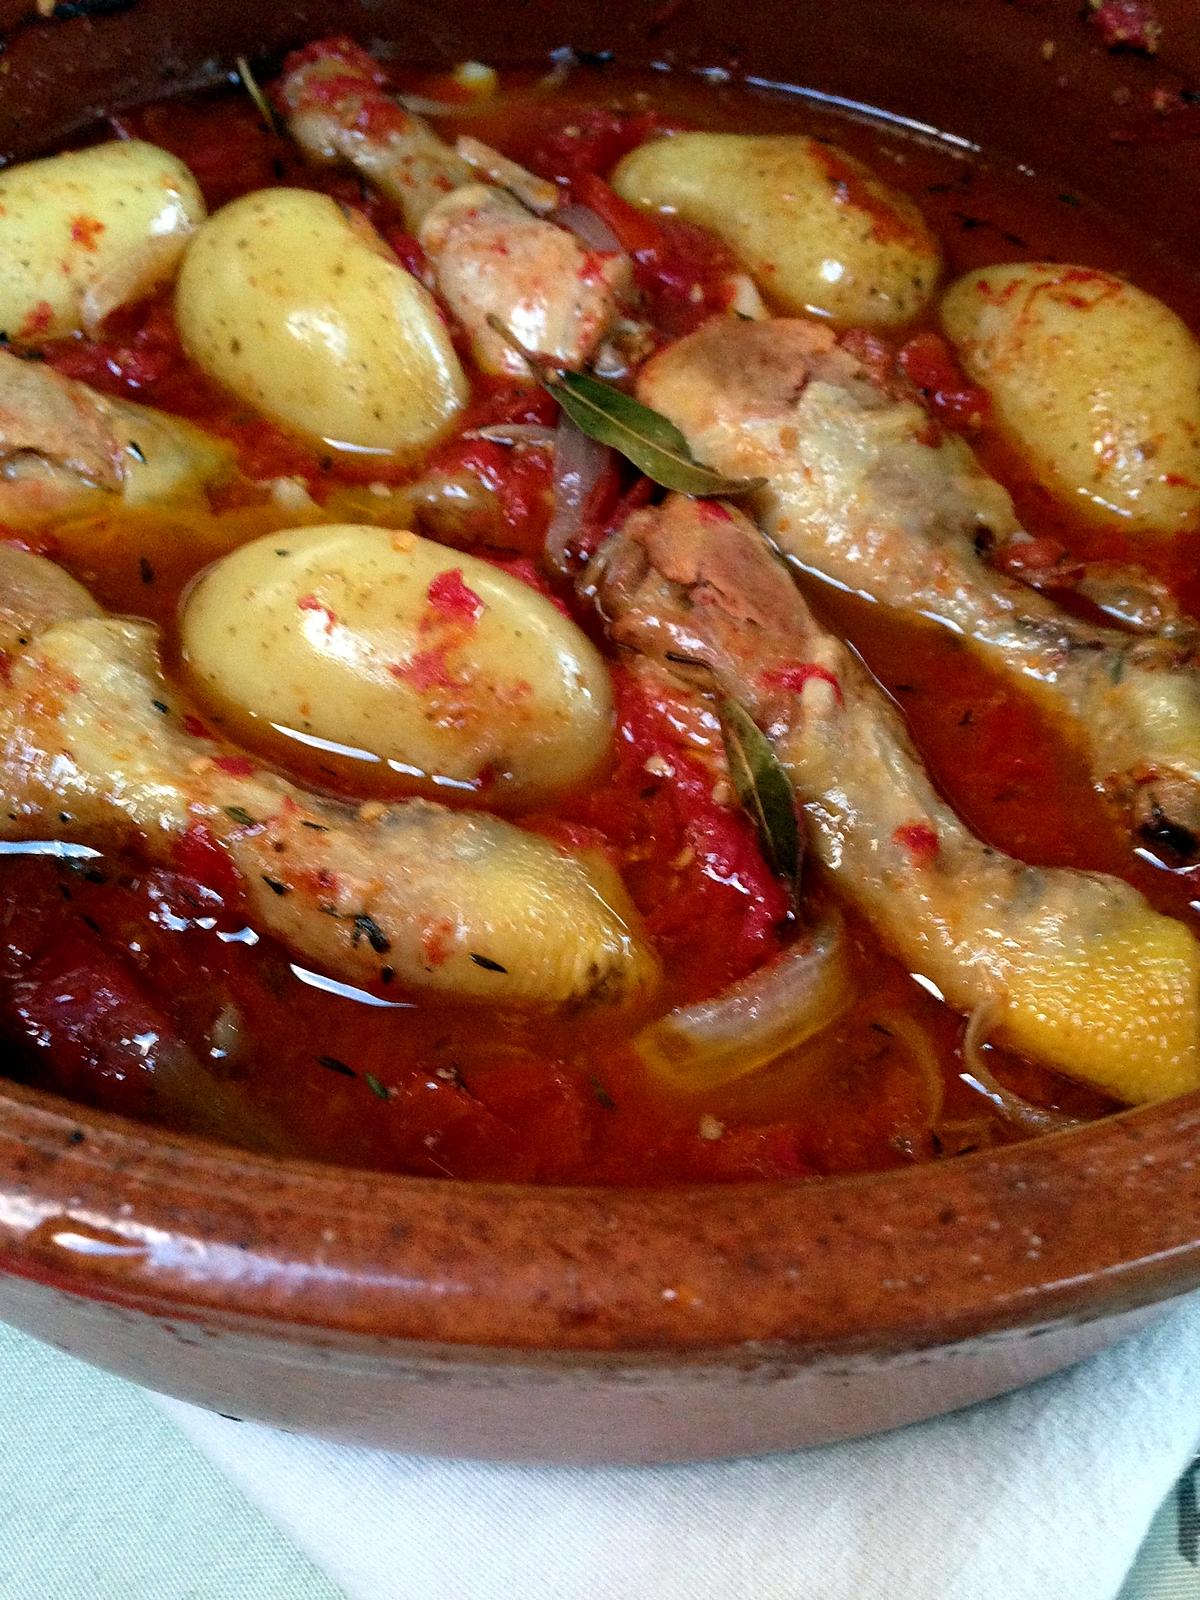 recette Cuisses de poulet sur tomates fraîches et ses pommes de terre